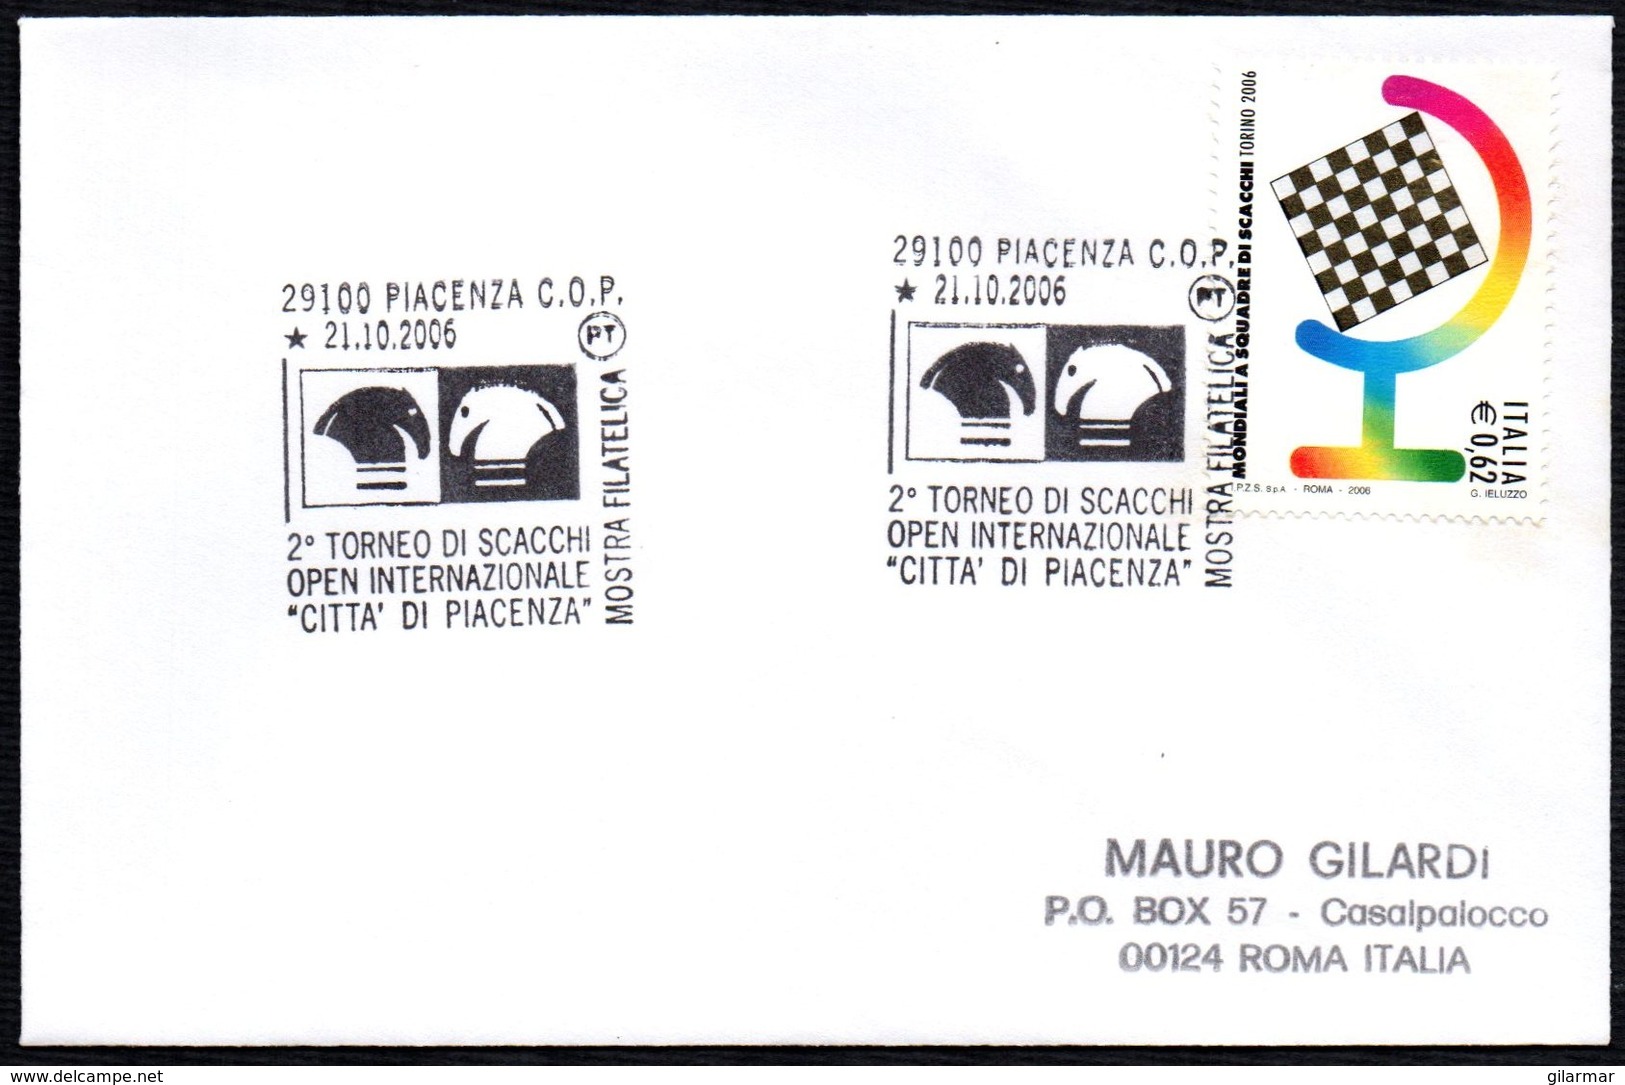 CHESS - ITALIA PIACENZA 2006 - 2° TORNEO OPEN INTERNAZIONALE DI SCACCHI CITTA' DI PIACENZA - MOSTRA FILATELICA - CARD - Chess